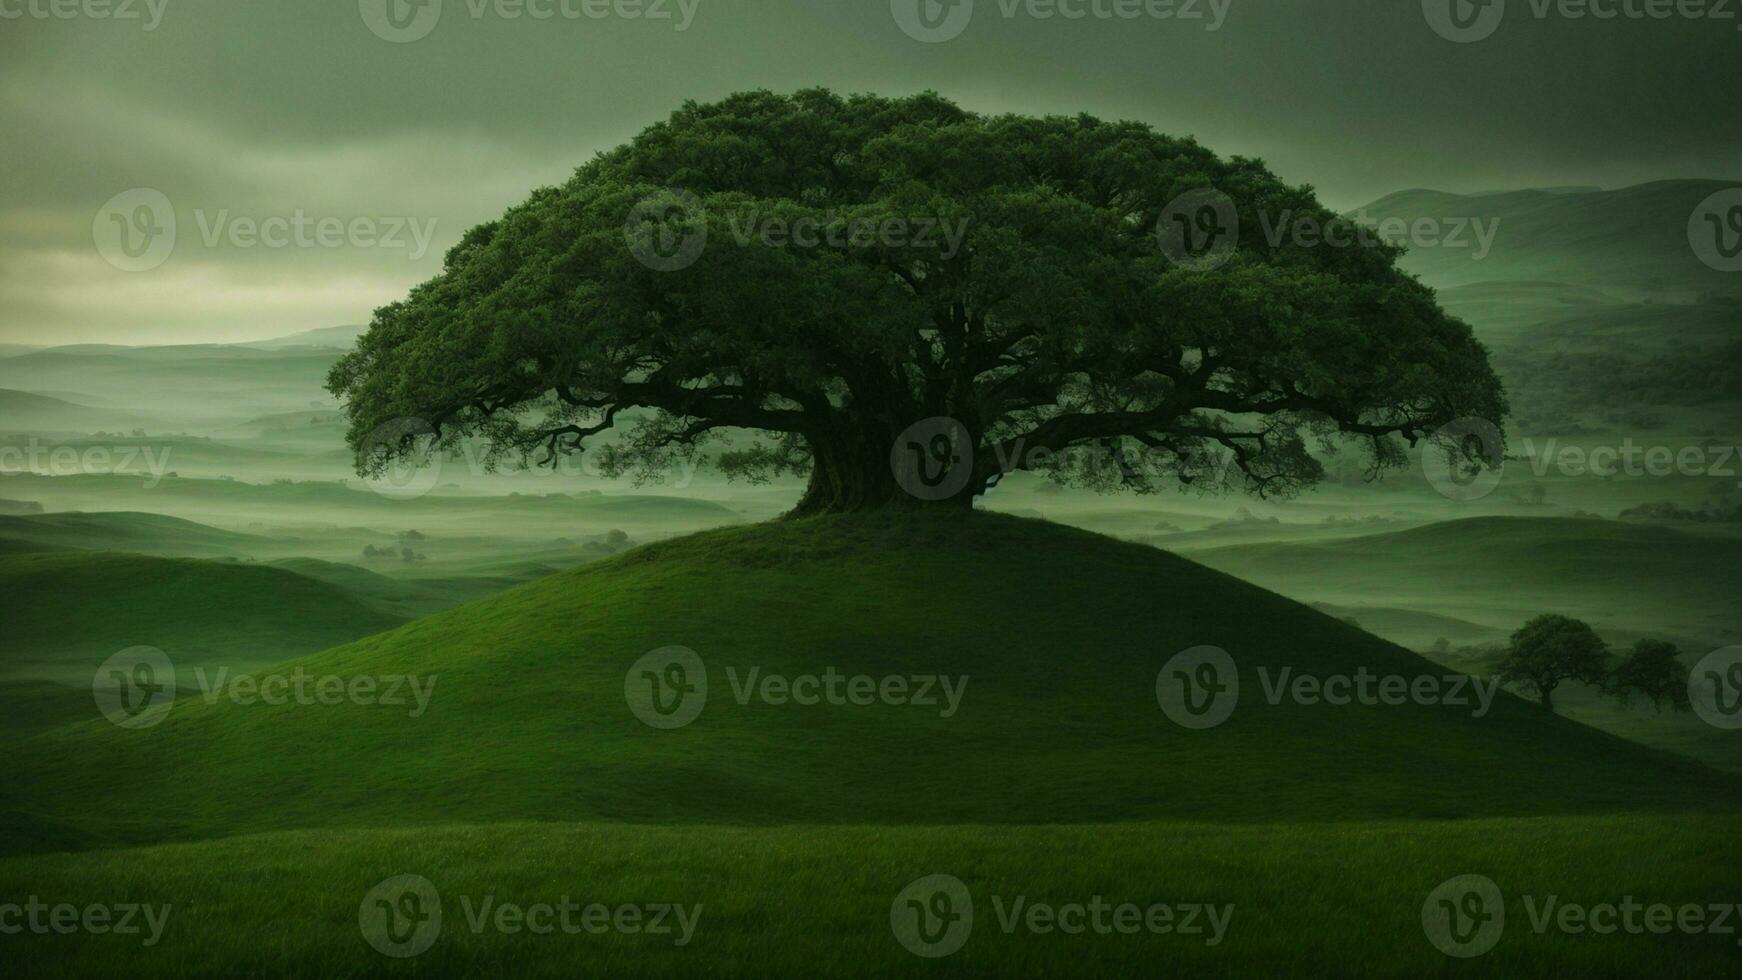 ai genererad uppfinna en mytisk bakgrundshistoria för de grön träd, införlivande element av folklore och fantasi till förklara dess utöver det vanliga kvaliteter och betydelse i de naturlig värld. foto